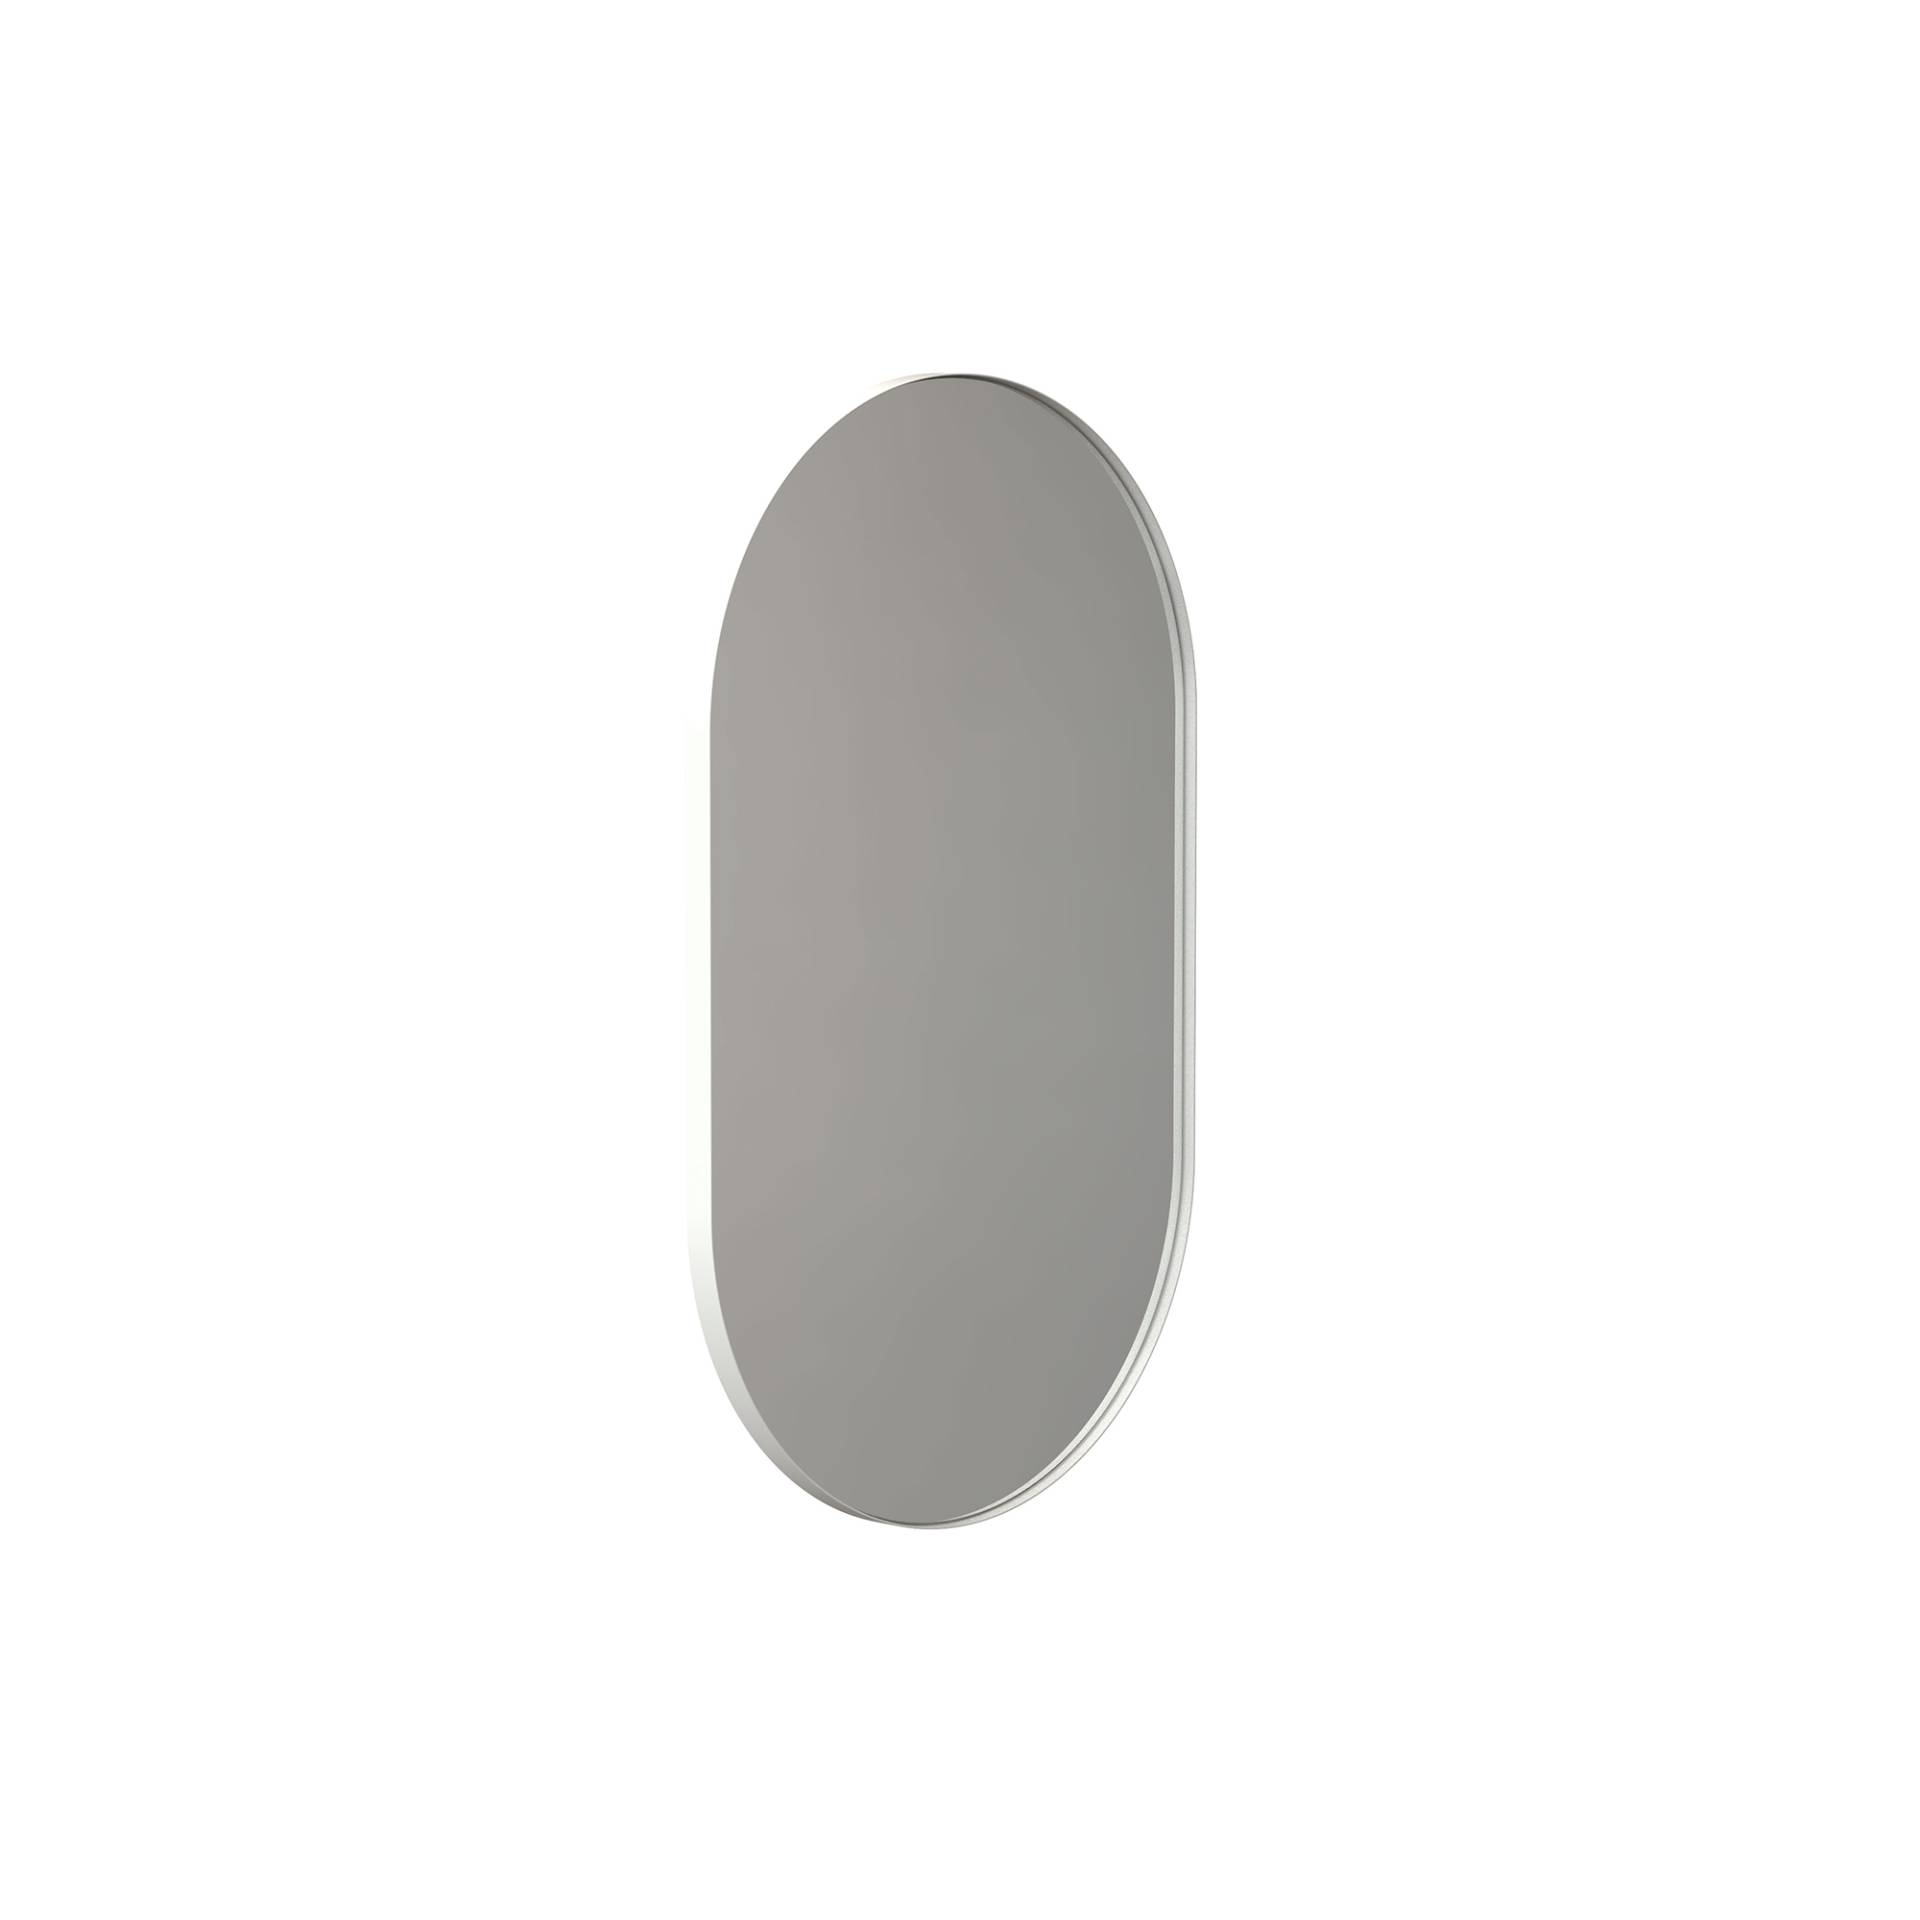 FROST - Unu Wandspiegel 4145 mit Rahmen 60x100cm - weiß/matt/LxBxH 60x100x3cm/oval von FROST